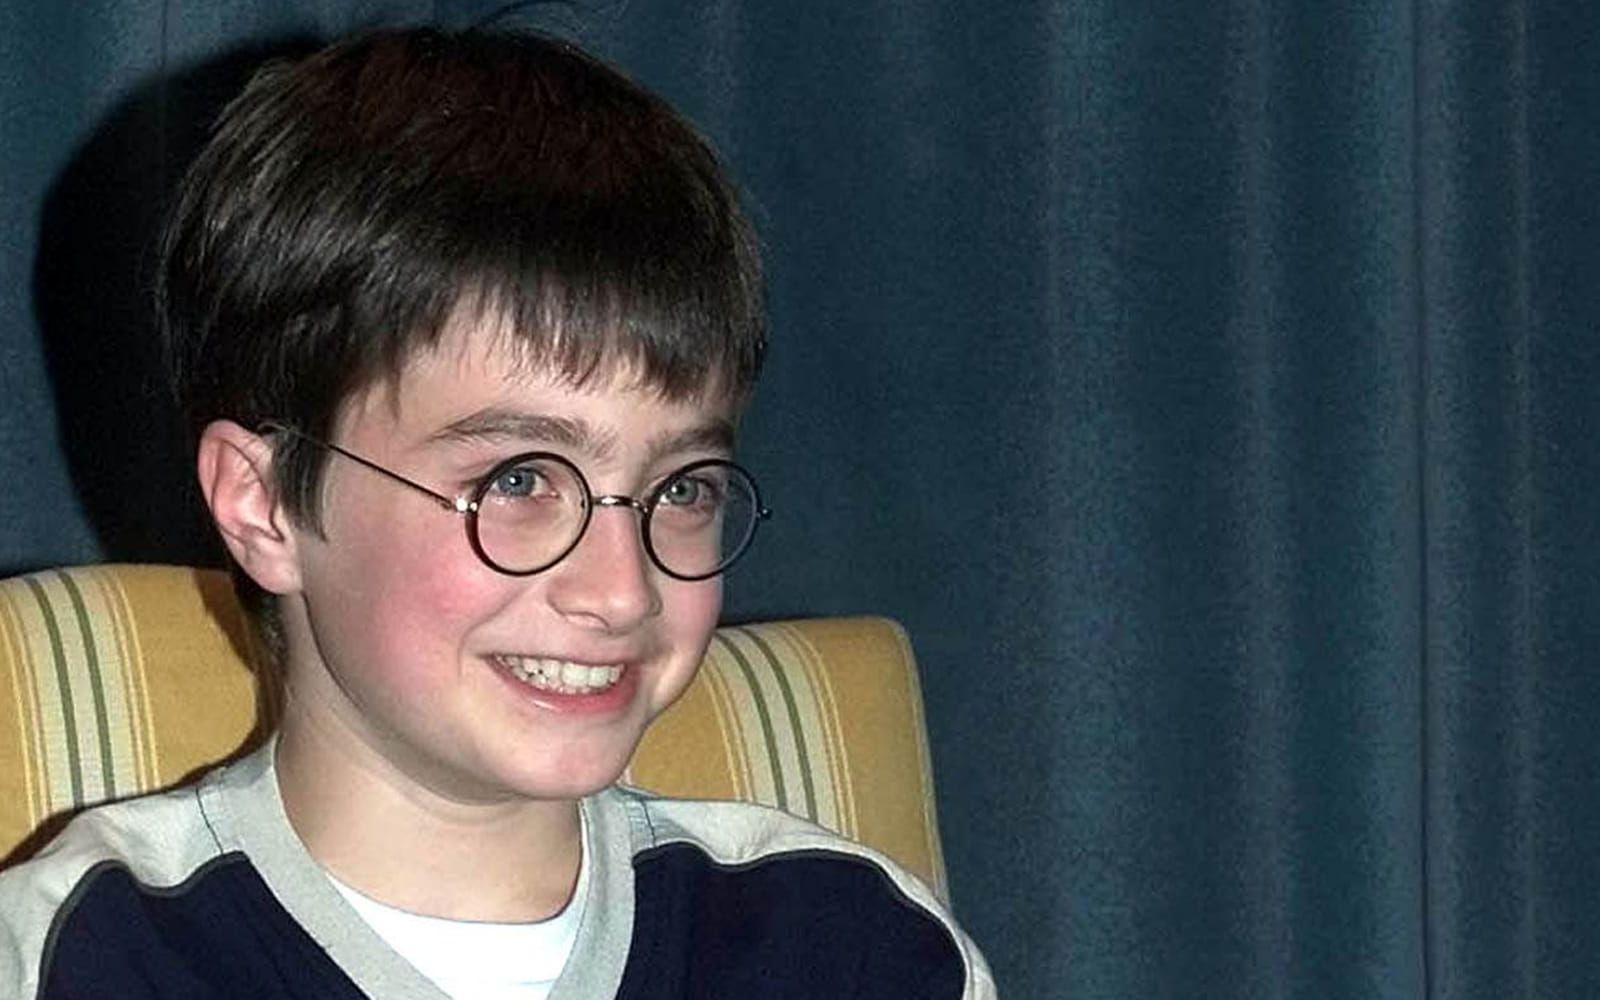 <strong>DÅ:</strong> Daniel Radcliffe var tolv år när han blev Harry Potter med resten av världen. Han växte upp på bioduken och var vid en tidpunkt Storbritanniens rikaste tonåring. Foto: TT